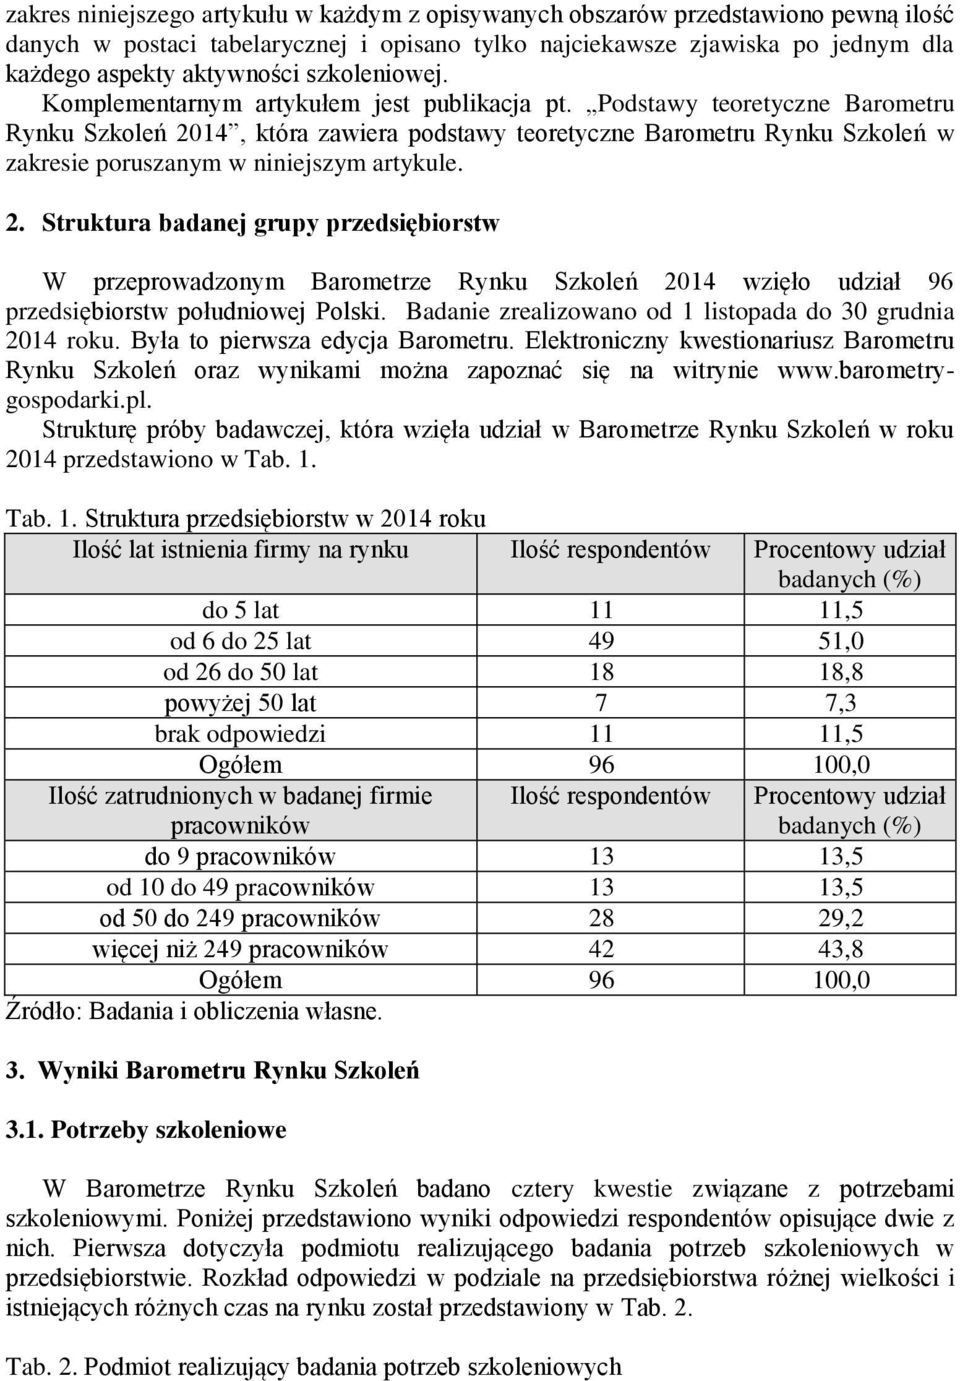 Podstawy teoretyczne Barometru Rynku Szkoleń 2014, która zawiera podstawy teoretyczne Barometru Rynku Szkoleń w zakresie poruszanym w niniejszym artykule. 2. Struktura badanej grupy przedsiębiorstw W przeprowadzonym Barometrze Rynku Szkoleń 2014 wzięło udział 96 przedsiębiorstw południowej Polski.